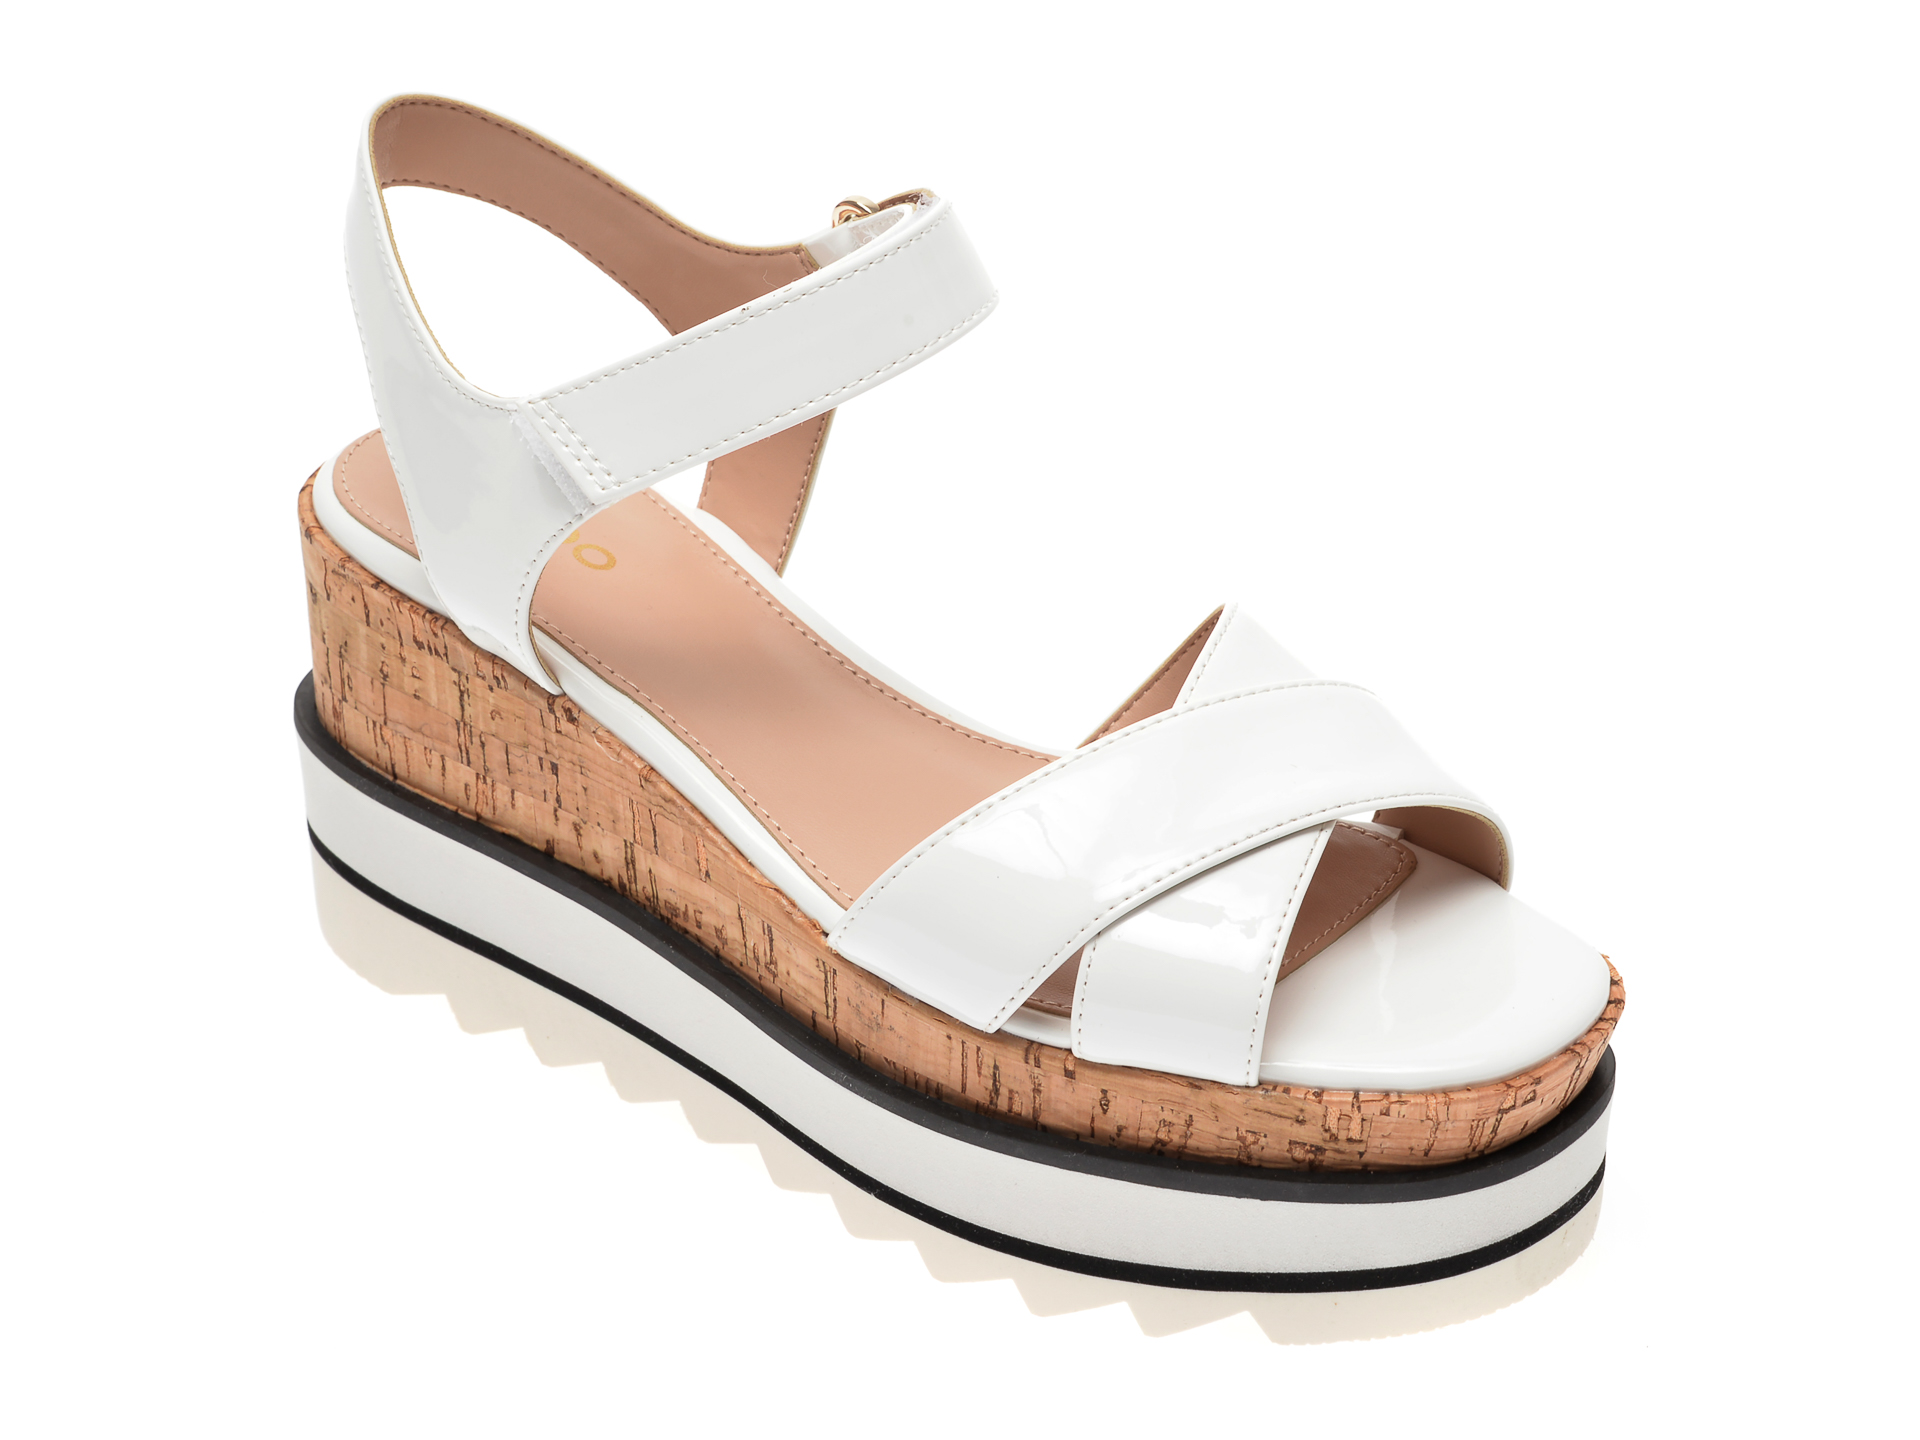 Sandale ALDO albe, Sassy100, din piele ecologica